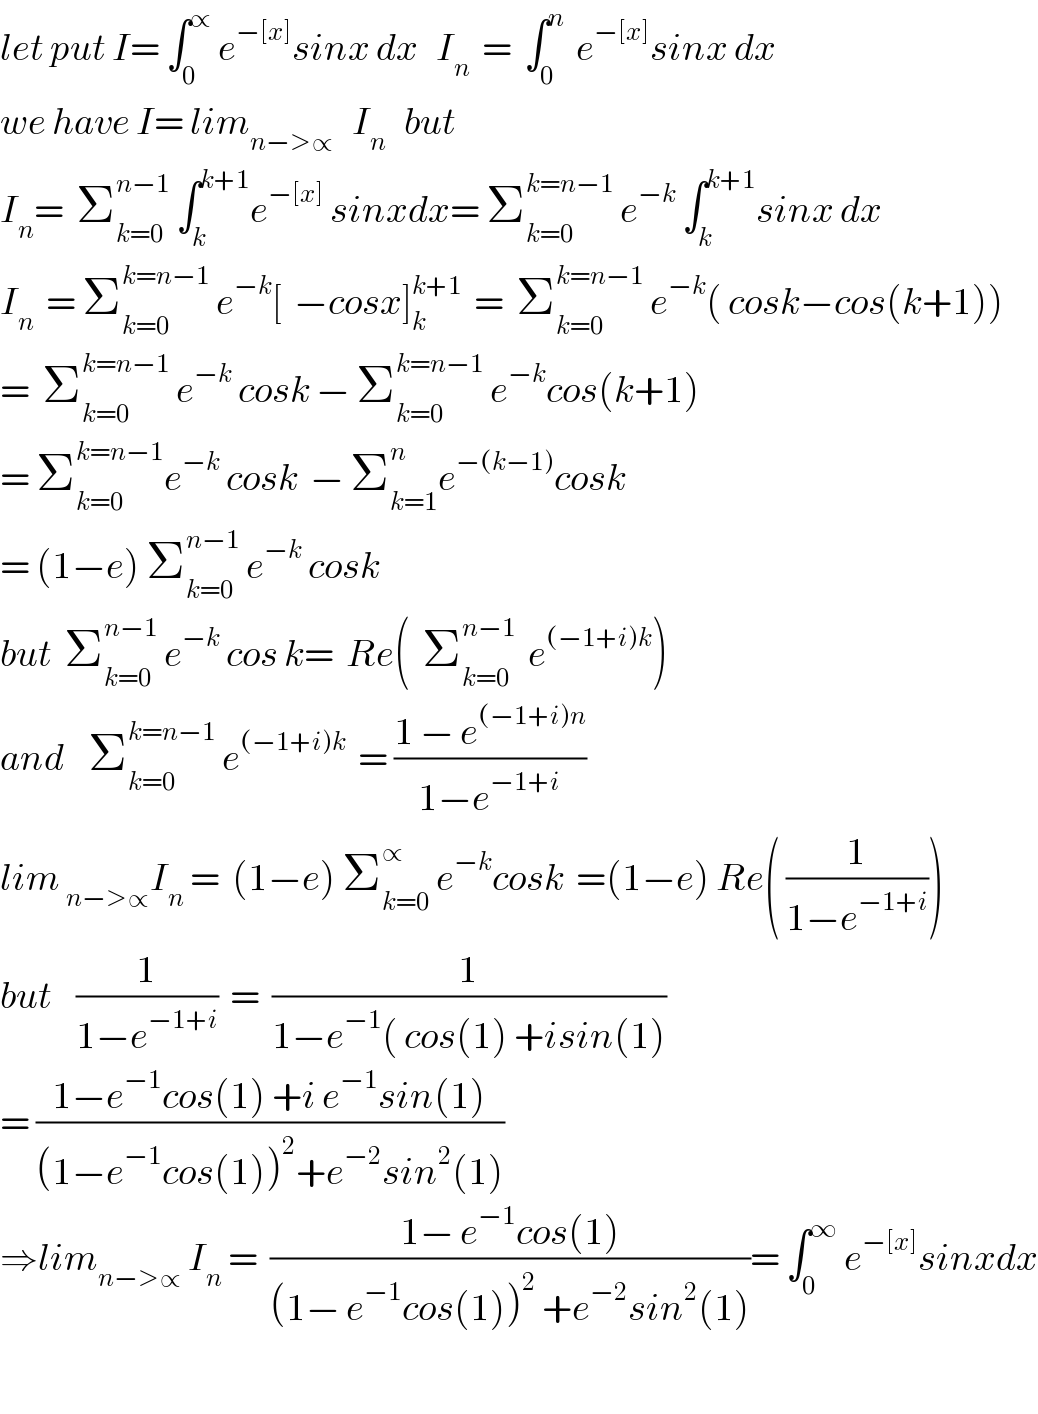 let put I= ∫_0 ^∝  e^(−[x]) sinx dx   I_n   =  ∫_0 ^n   e^(−[x]) sinx dx  we have I= lim_(n−>∝)    I_n    but  I_n =  Σ_(k=0) ^(n−1)  ∫_k ^(k+1) e^(−[x])  sinxdx= Σ_(k=0) ^(k=n−1)  e^(−k)  ∫_k ^(k+1) sinx dx  I_n   = Σ_(k=0) ^(k=n−1)  e^(−k) [  −cosx]_k ^(k+1)   =  Σ_(k=0) ^(k=n−1)  e^(−k) ( cosk−cos(k+1))  =  Σ_(k=0) ^(k=n−1)  e^(−k)  cosk − Σ_(k=0) ^(k=n−1)  e^(−k) cos(k+1)  = Σ_(k=0) ^(k=n−1) e^(−k)  cosk  − Σ_(k=1) ^n e^(−(k−1)) cosk  = (1−e) Σ_(k=0) ^(n−1)  e^(−k)  cosk  but  Σ_(k=0) ^(n−1)  e^(−k)  cos k=  Re(  Σ_(k=0) ^(n−1)   e^((−1+i)k) )  and    Σ_(k=0) ^(k=n−1)  e^((−1+i)k)   = ((1 − e^((−1+i)n) )/(1−e^(−1+i) ))  lim _(n−>∝) I_n  =  (1−e) Σ_(k=0) ^∝  e^(−k) cosk  =(1−e) Re( (1/(1−e^(−1+i) )))  but    (1/(1−e^(−1+i) ))  =  (1/(1−e^(−1) ( cos(1) +isin(1)))  = ((1−e^(−1) cos(1) +i e^(−1) sin(1))/((1−e^(−1) cos(1))^2 +e^(−2) sin^2 (1)))  ⇒lim_(n−>∝)  I_n  =  ((1− e^(−1) cos(1))/((1− e^(−1) cos(1))^2  +e^(−2) sin^2 (1)))= ∫_0 ^∞  e^(−[x]) sinxdx    